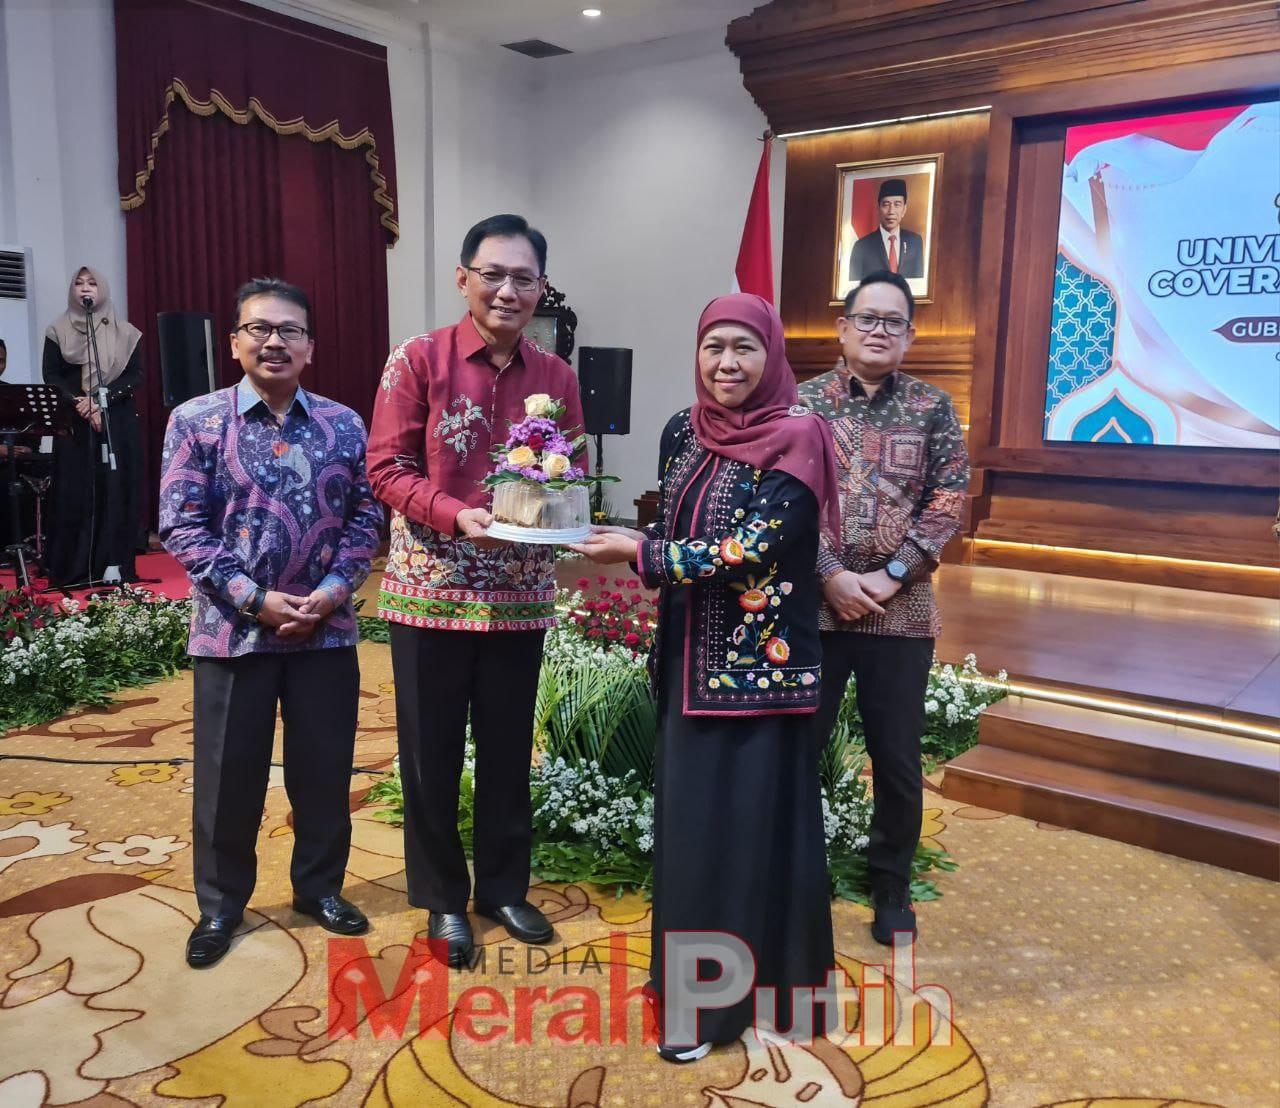 Gubernur Khofifah mengapresiasi Bupati dan Walikota yang berkomitmen mendorong terwujudnya Cakupan Kesehatan Semesta atau UHC khususnya di Jawa Timur.